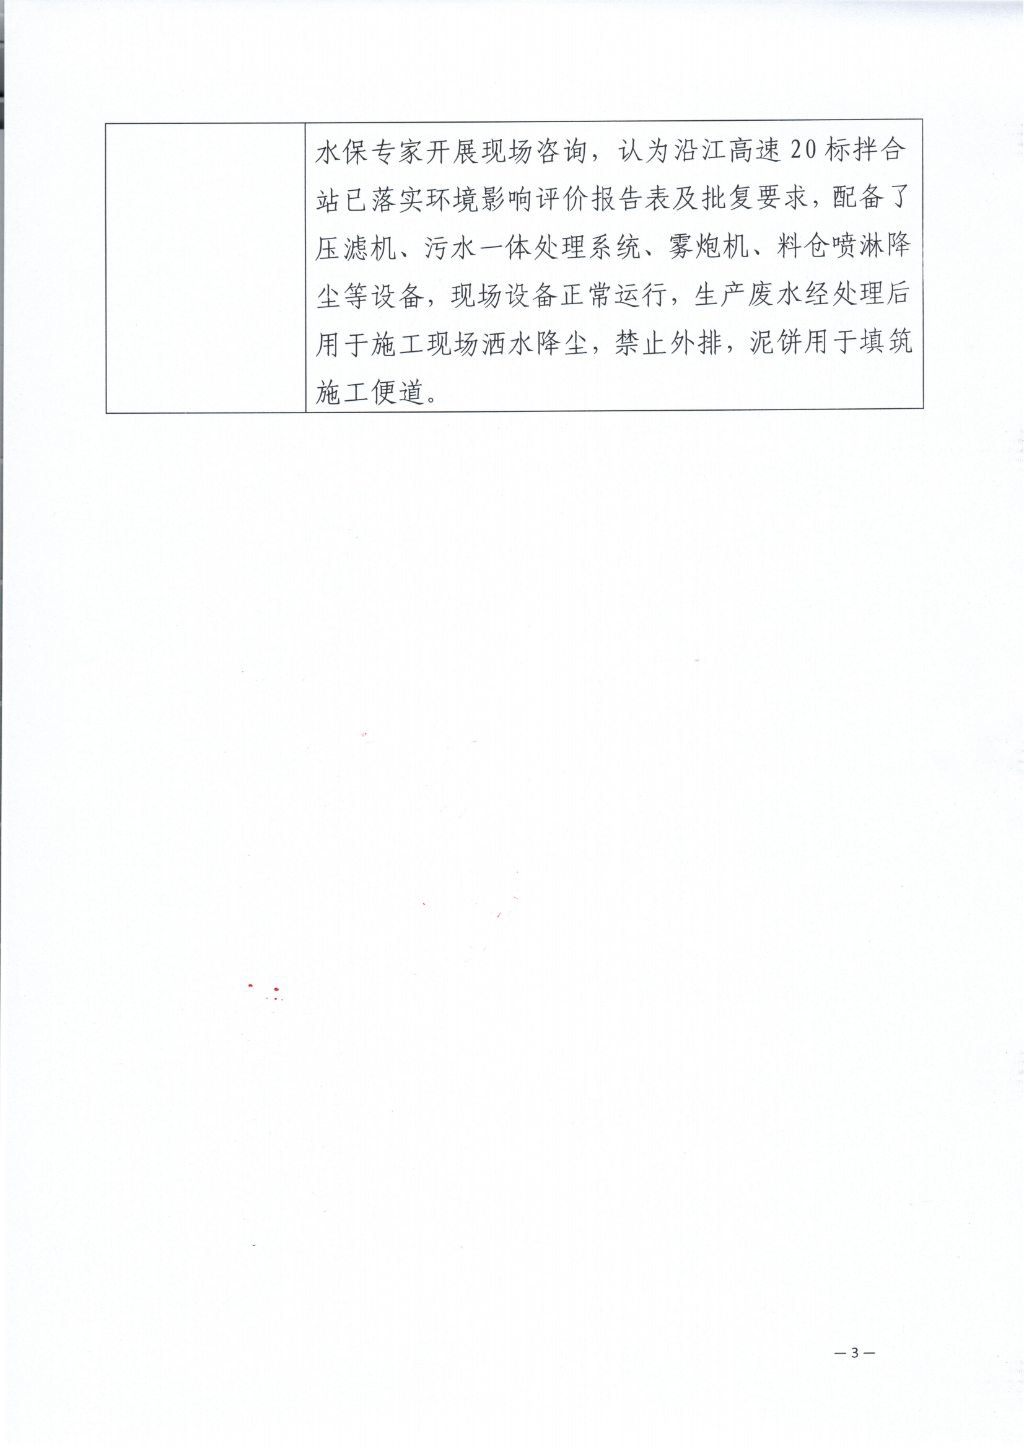 四川沿江攀宁高速公路有限公司 关于省环保督察第三轮第三十项整改任务销号公示